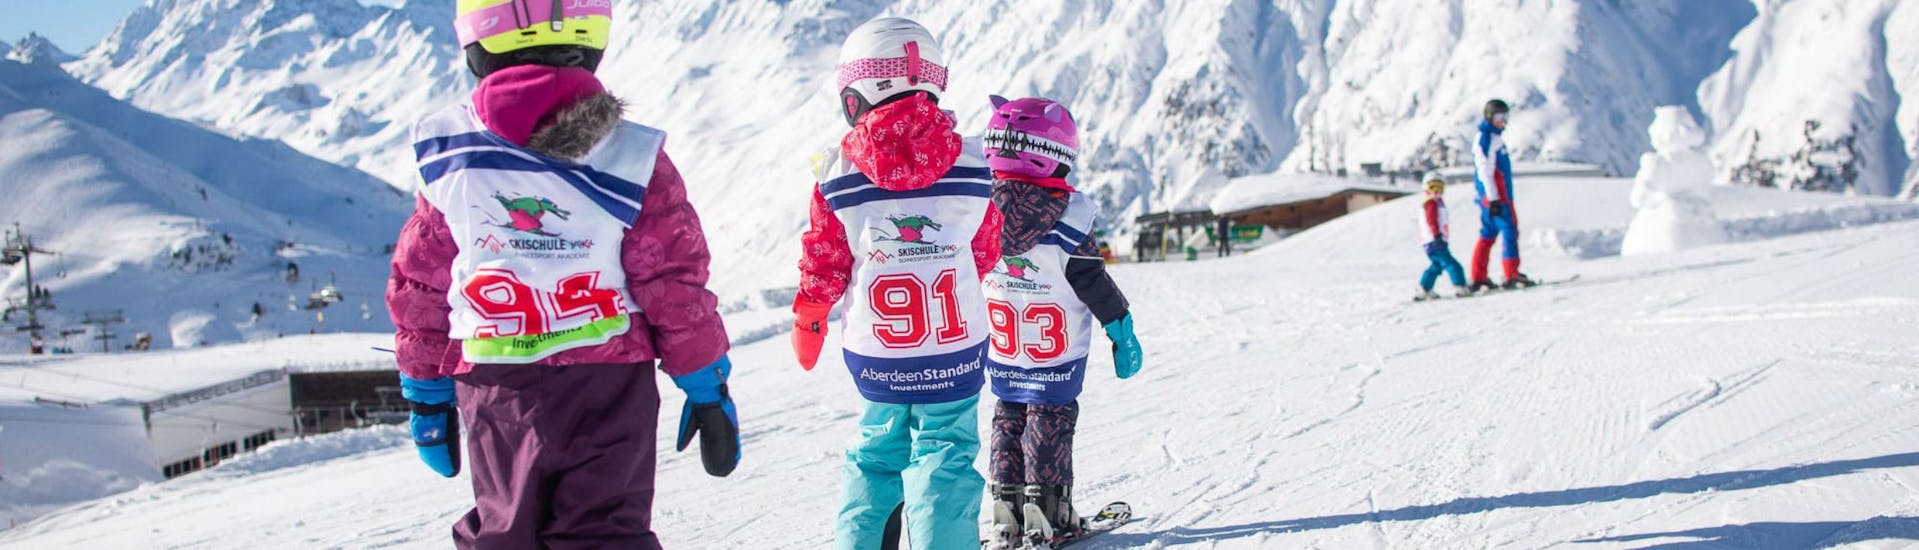 Tres niños pequeños están esquiando en fila uno detrás del otro a lo largo de un plano de nieve, durante sus clases de esquí para niños "Bambini" (3-5 años) - Todos los niveles, en la estación de esquí de Ischgl.